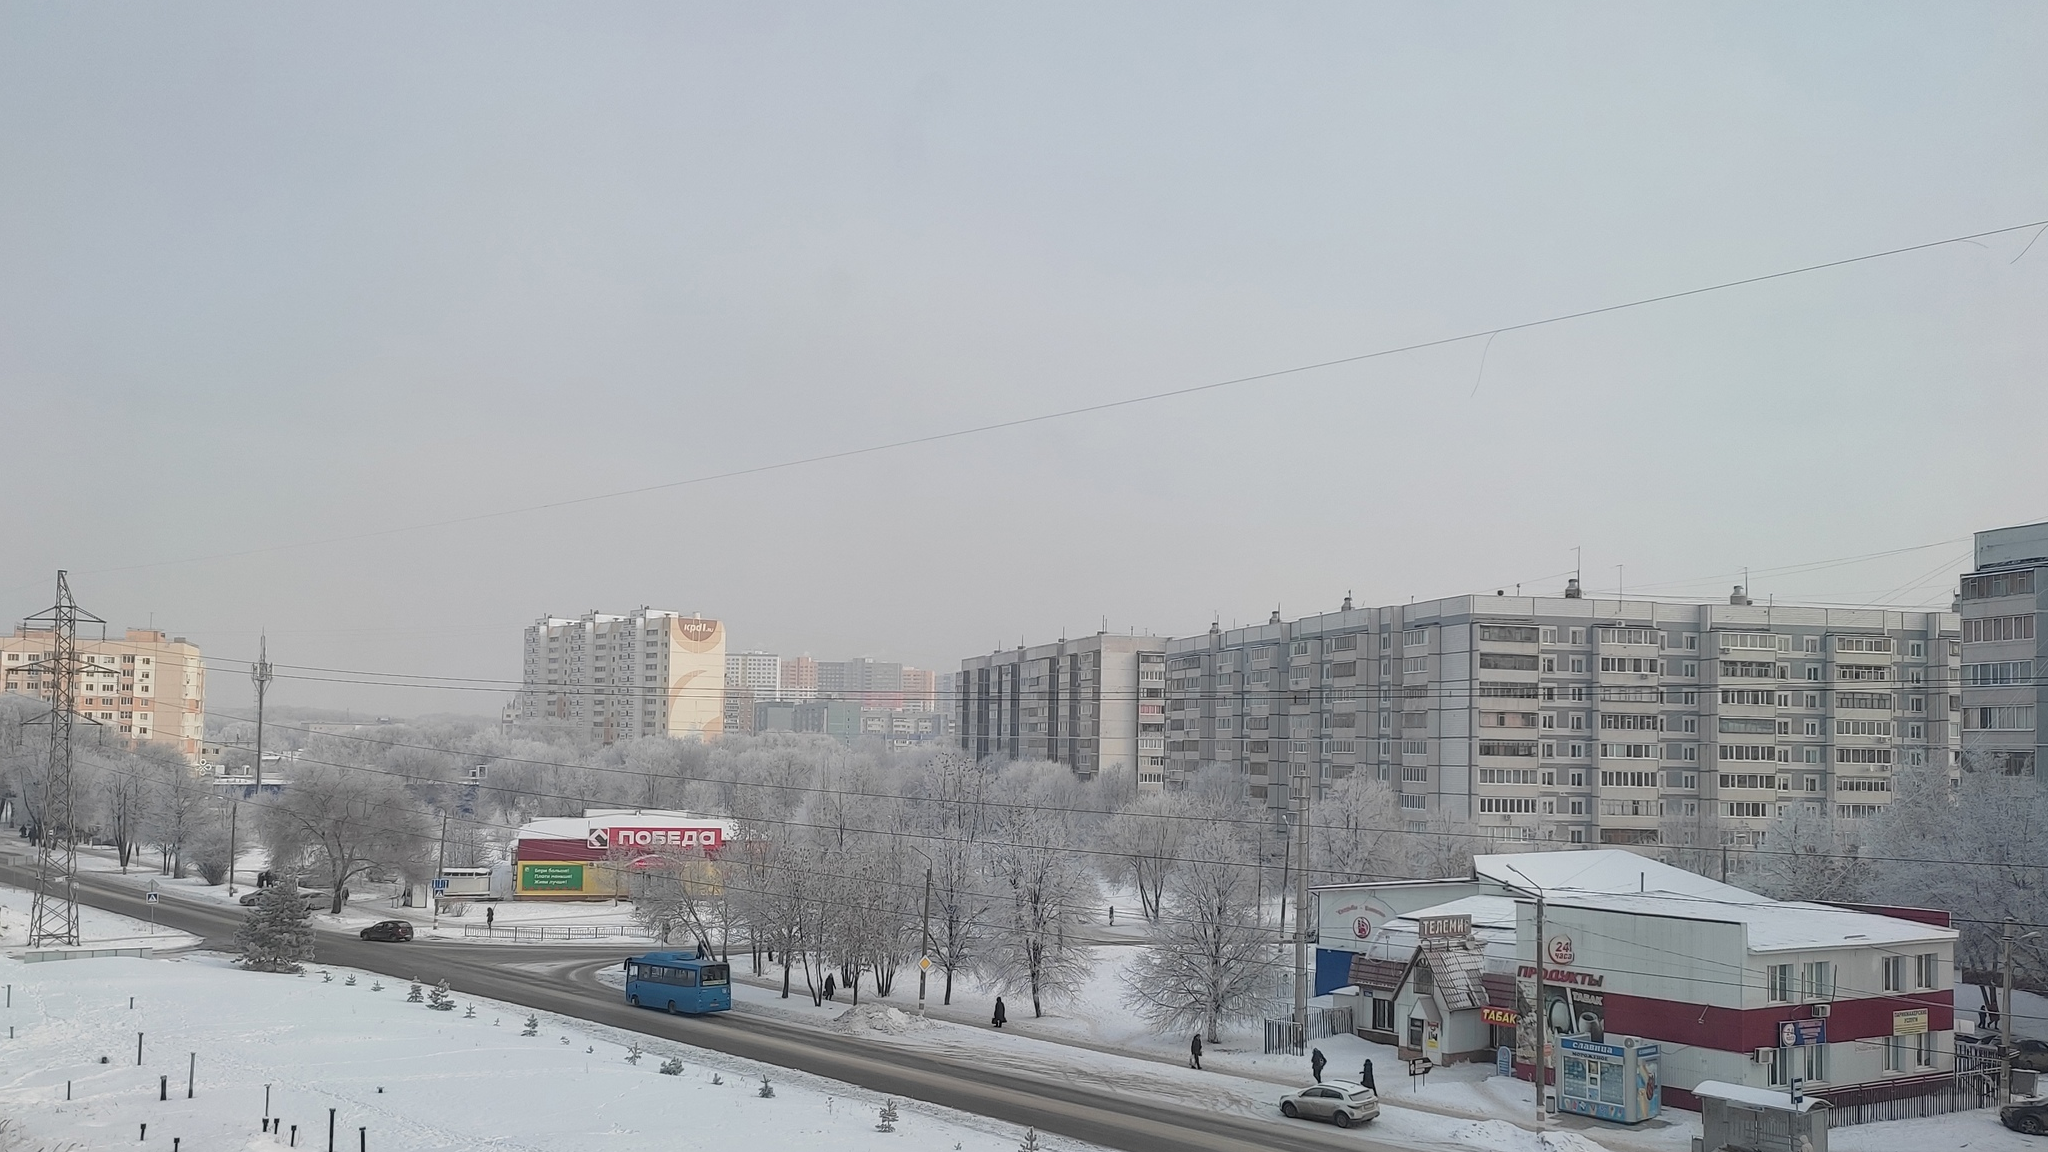 Ульяновск фото 2023 год. Ульяновск сегодня фото. Фото последний месяц зимы. 14 Февраля 2023 года Ульяновск погода фото. Погода в ульяновске в феврале